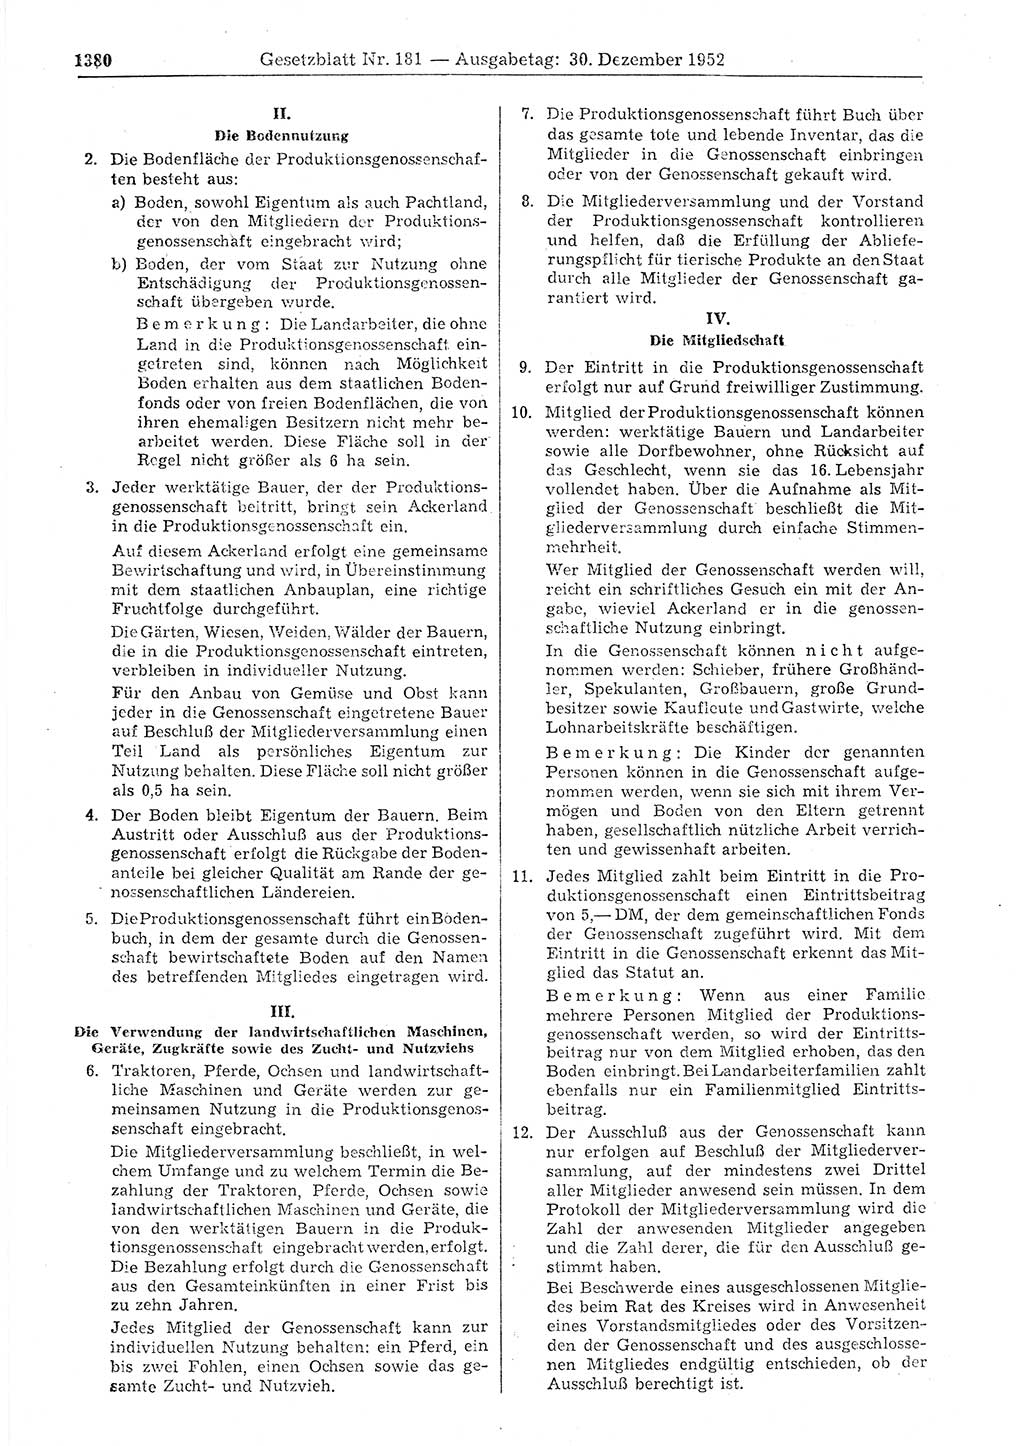 Gesetzblatt (GBl.) der Deutschen Demokratischen Republik (DDR) 1952, Seite 1380 (GBl. DDR 1952, S. 1380)